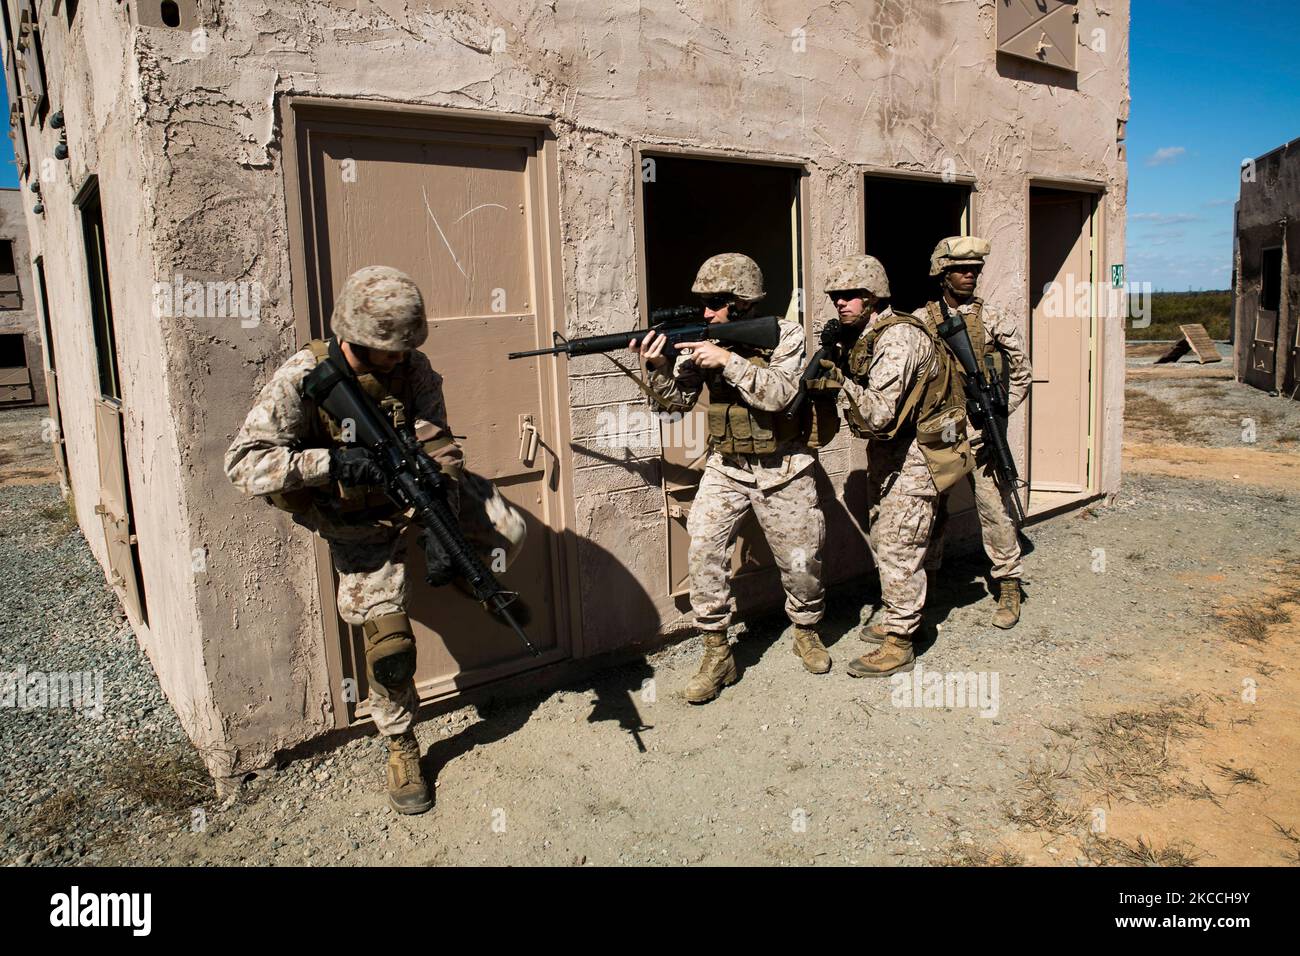 US-Marineinfanteristen stapeln sich auf, um bei militärischen Operationen auf städtischem Gelände eine Tür zu durchbrechen. Stockfoto